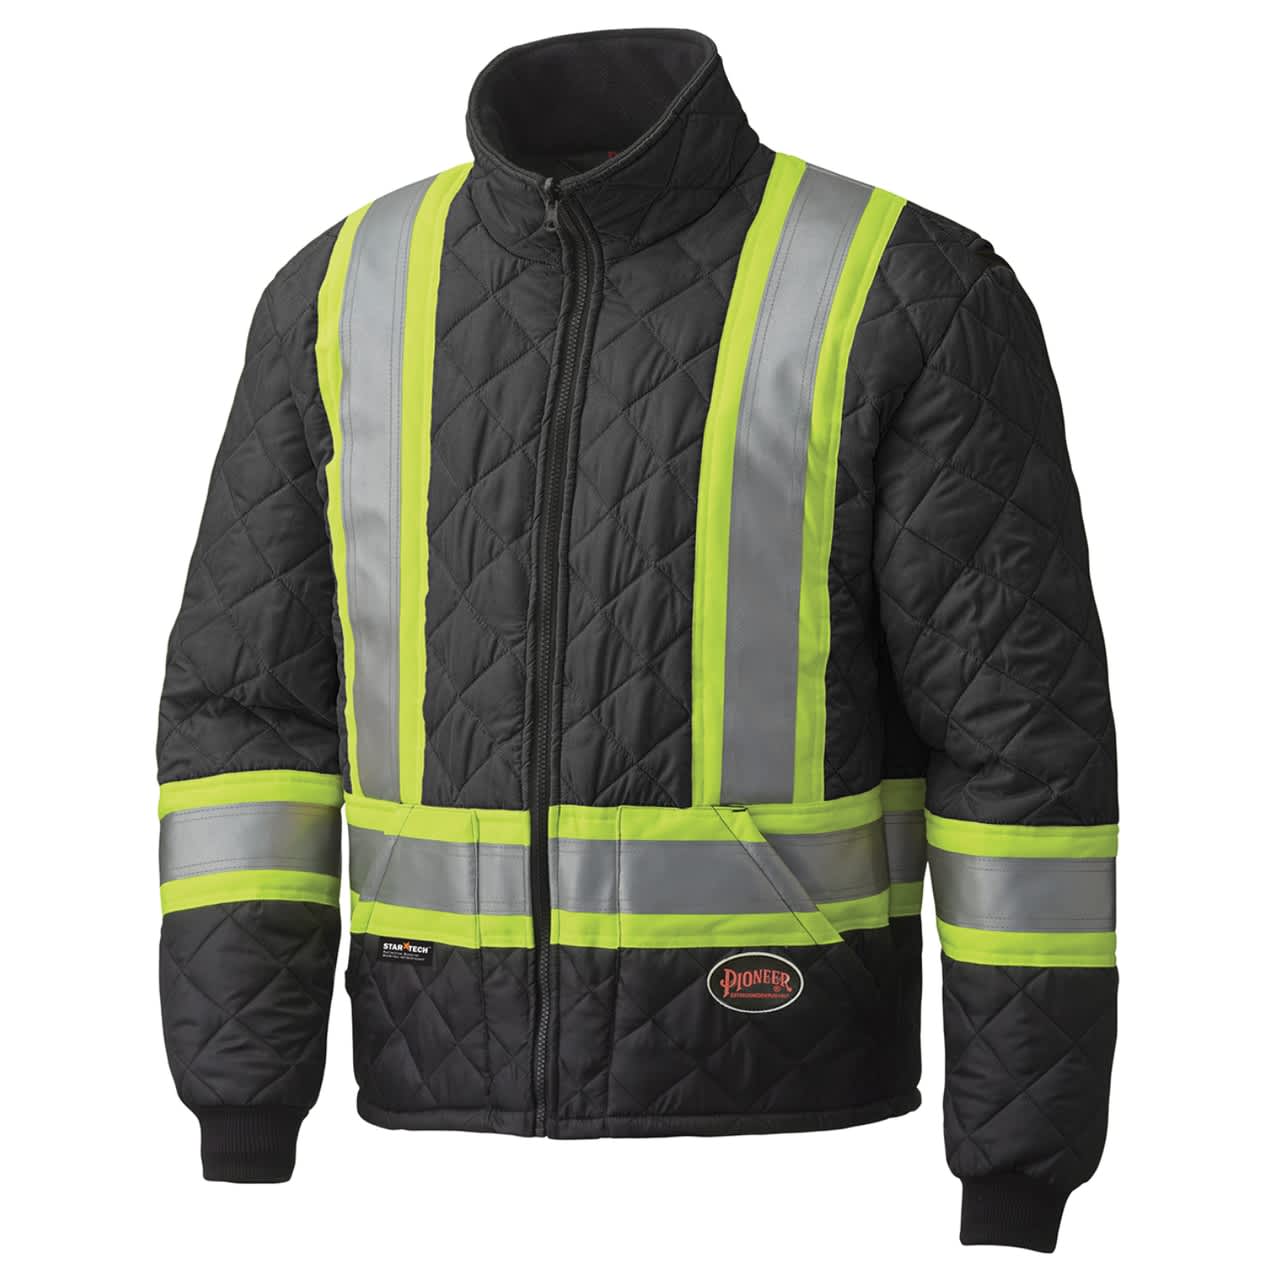 Pioneer freezer jacket #V1170170 – Black, Large